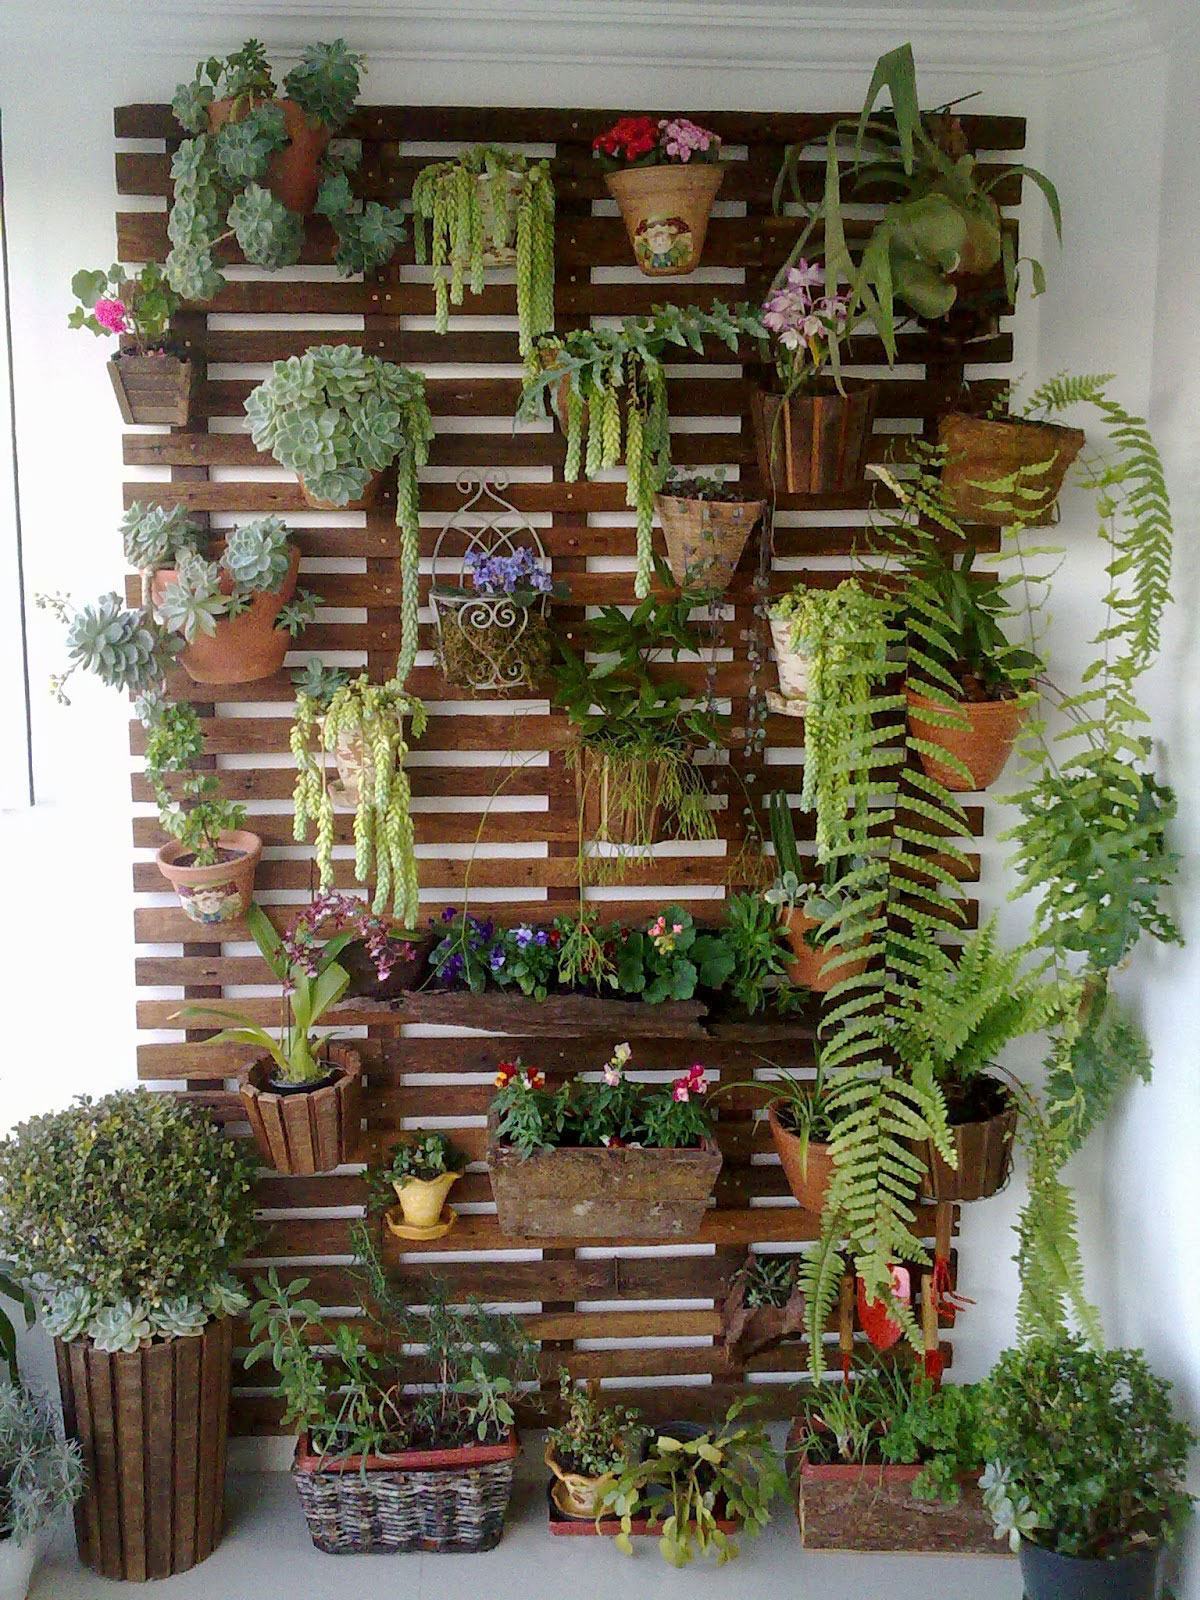 É possível montar o jardim com vários vasos presos em um suporte vertical.